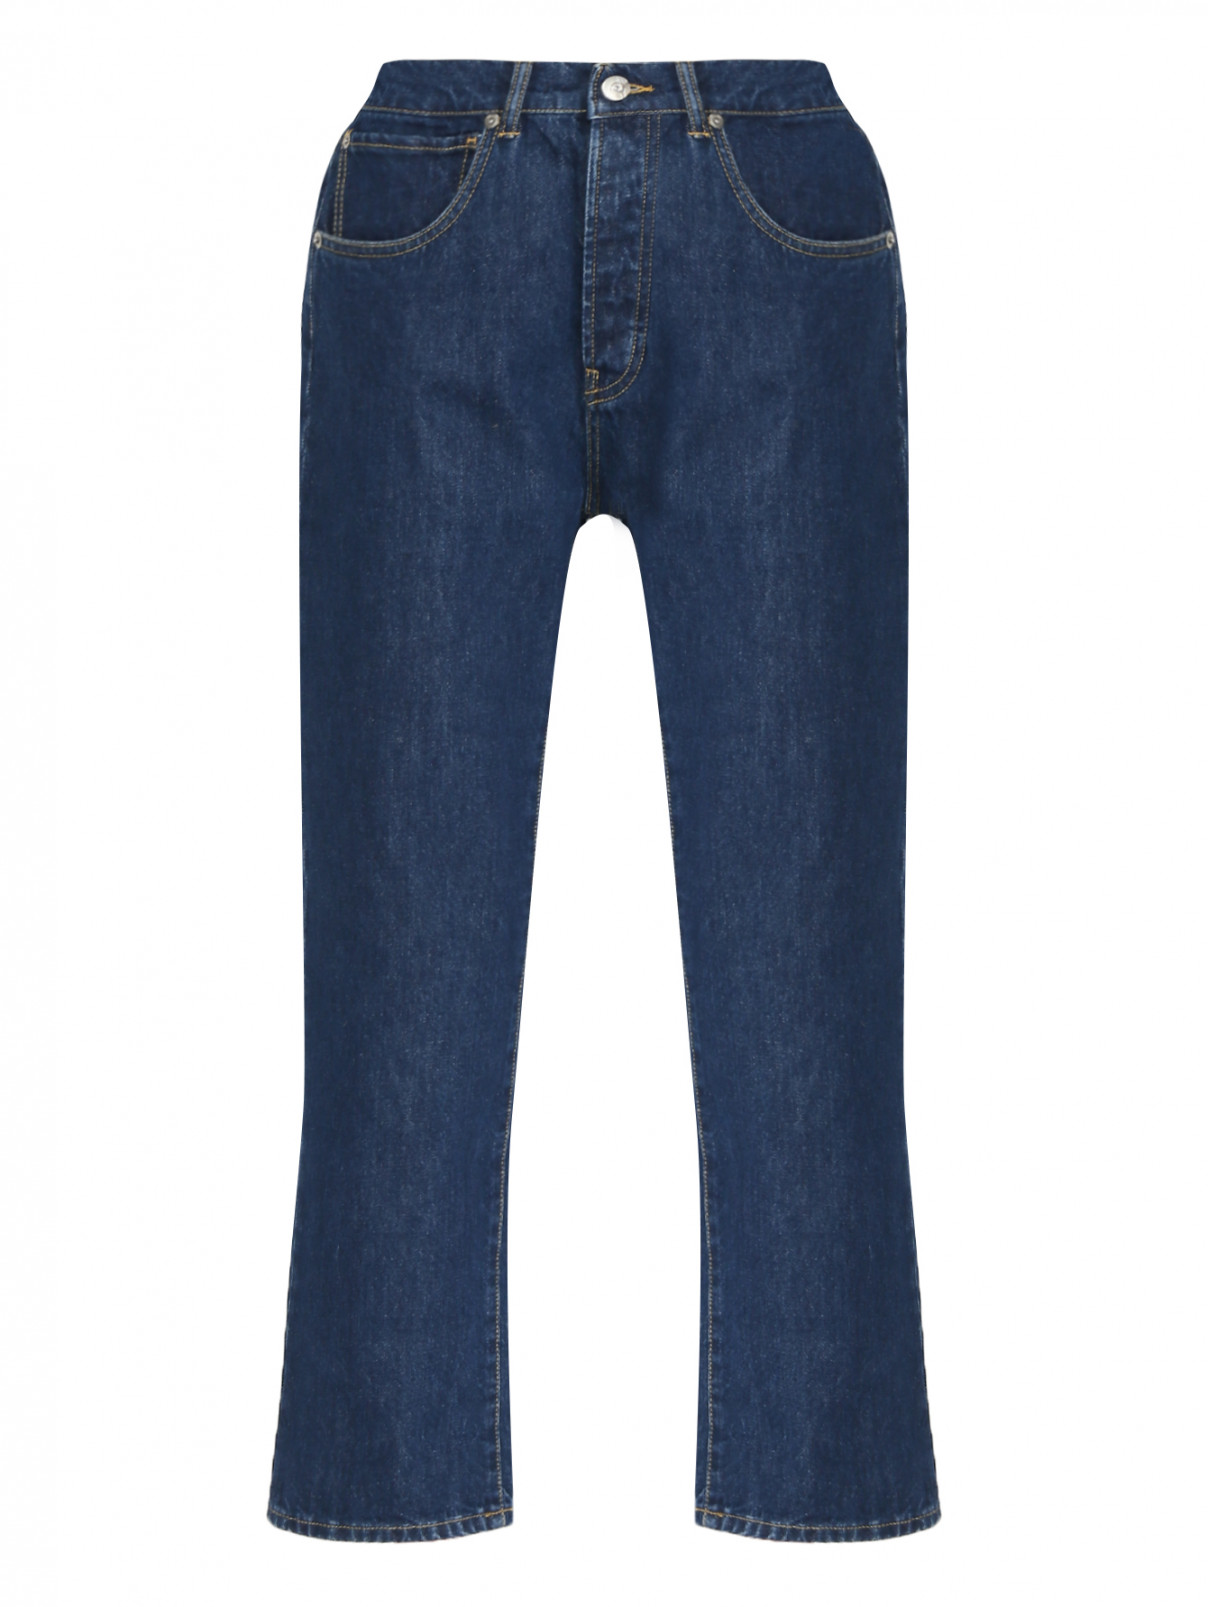 Укороченные джинсы из темного денима 3x1  –  Общий вид  – Цвет:  Синий